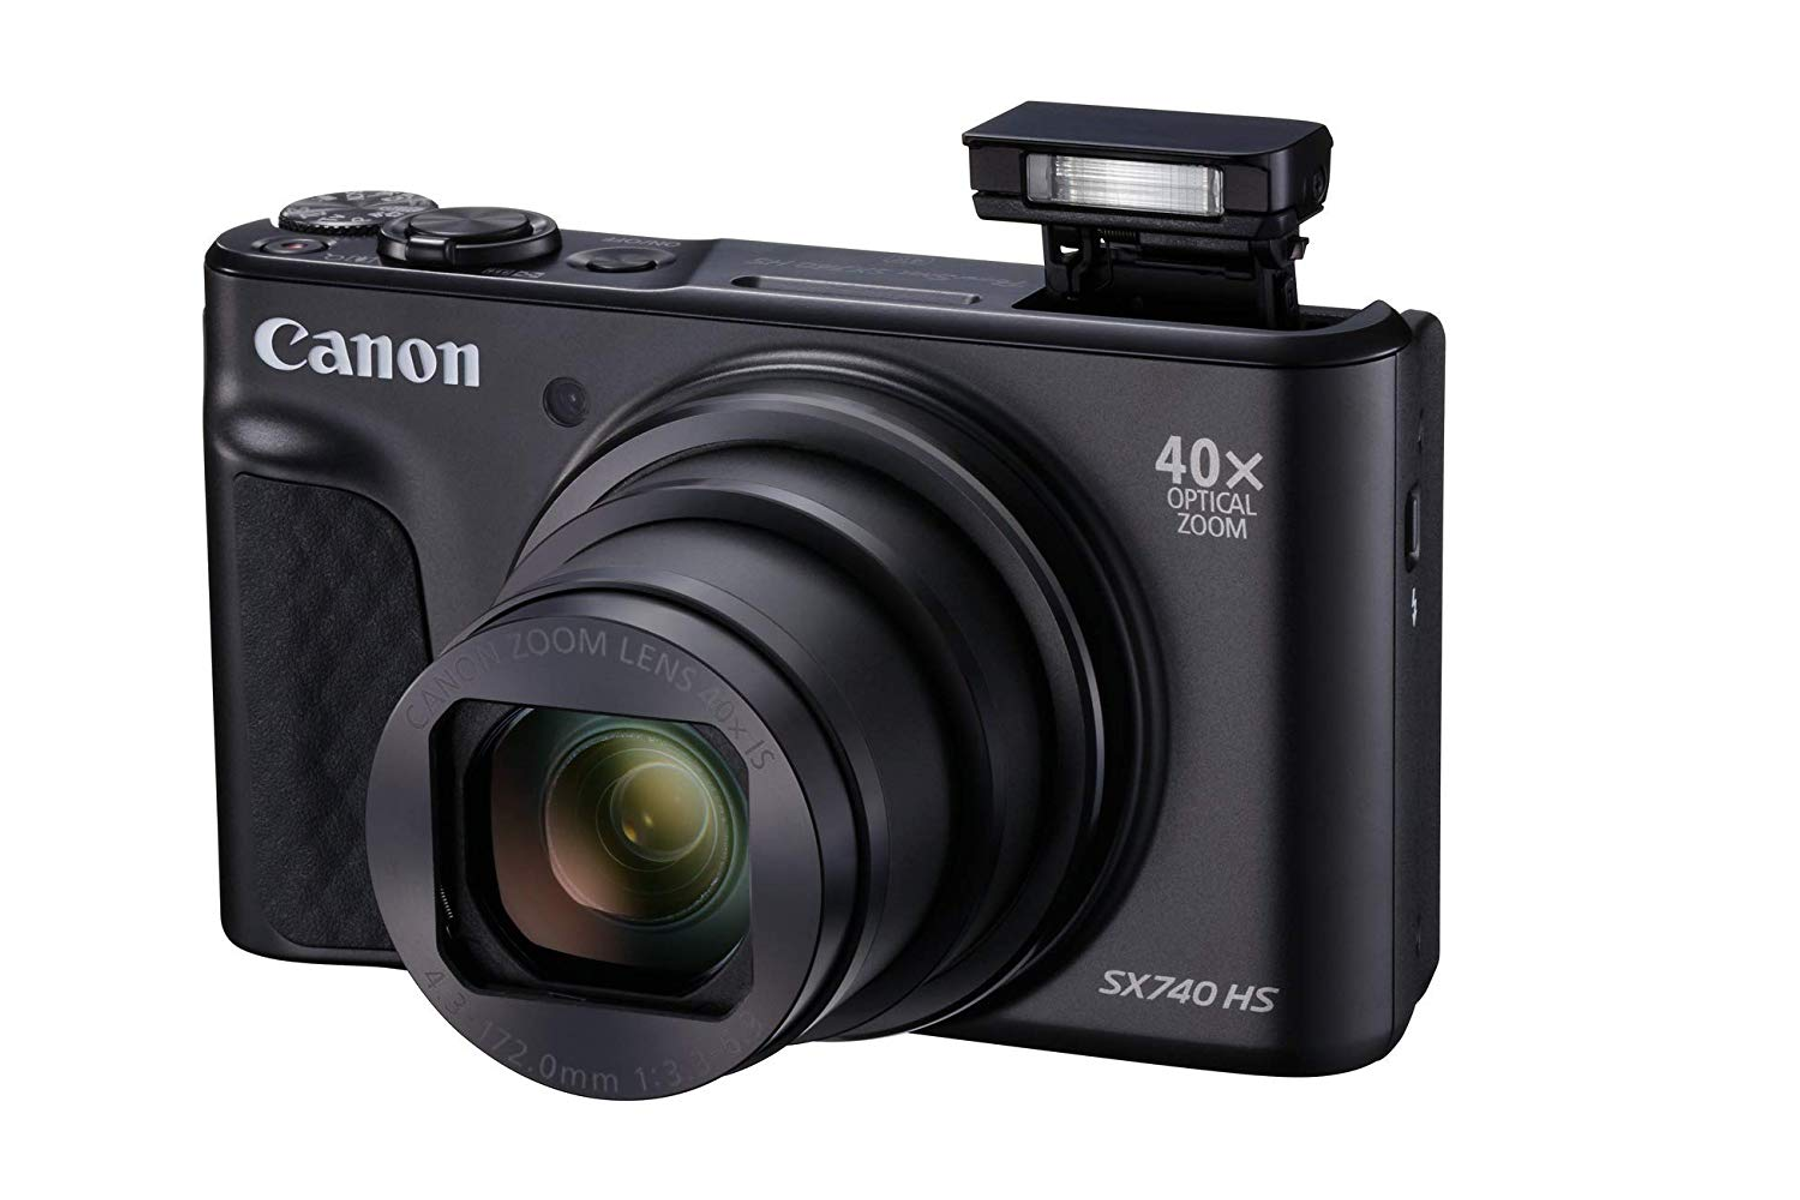 740 Digitalkamera SX Schwarz, LCD 40fach CANON opt. (TFT), Zoom, WLAN- POWERSHOT HS